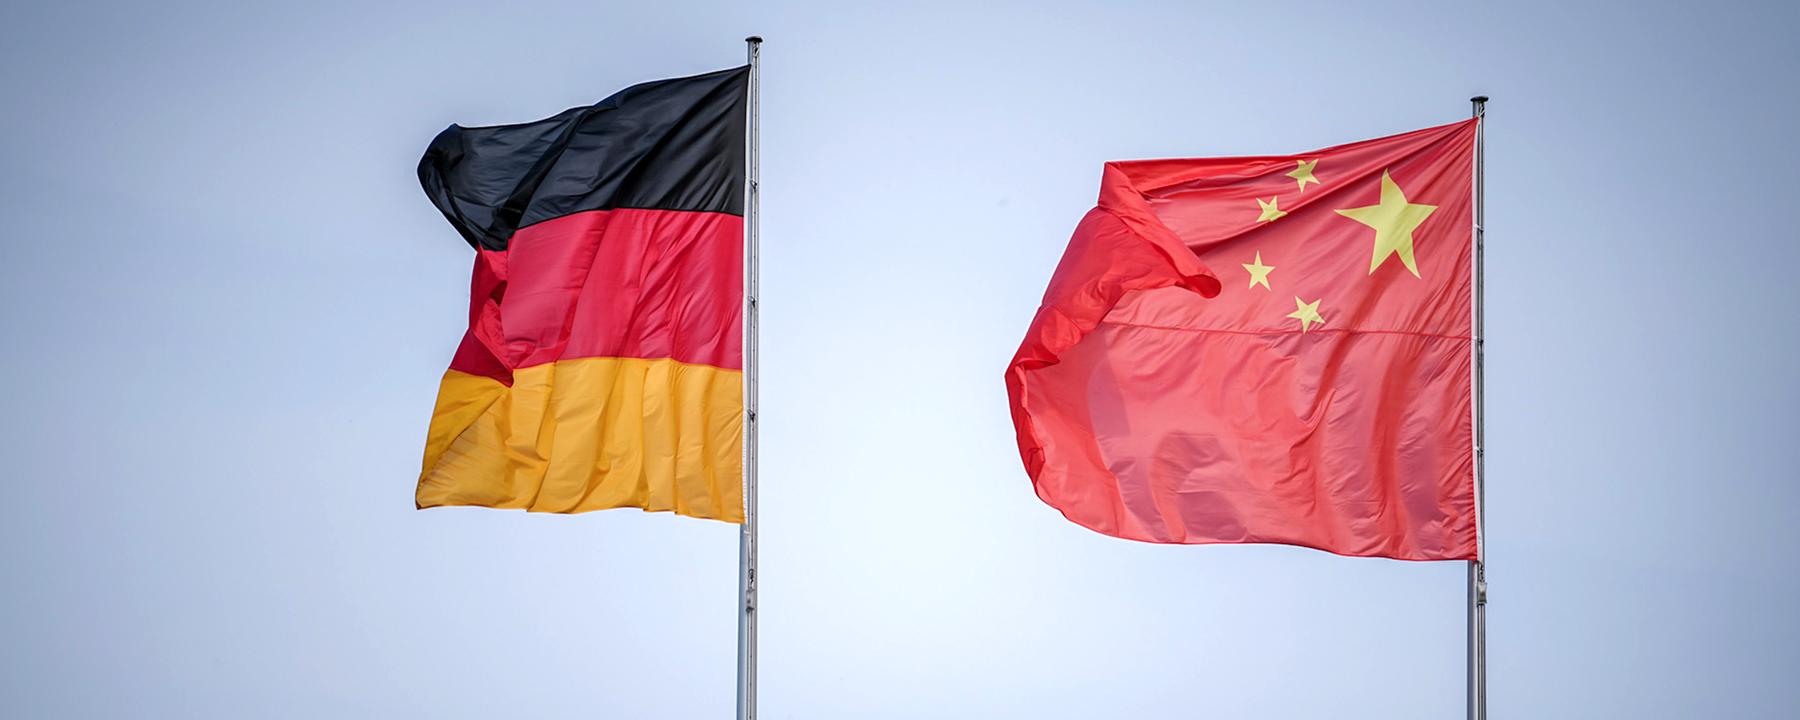 Berlin: Die Flaggen von Deutschland und China wehen im Wind